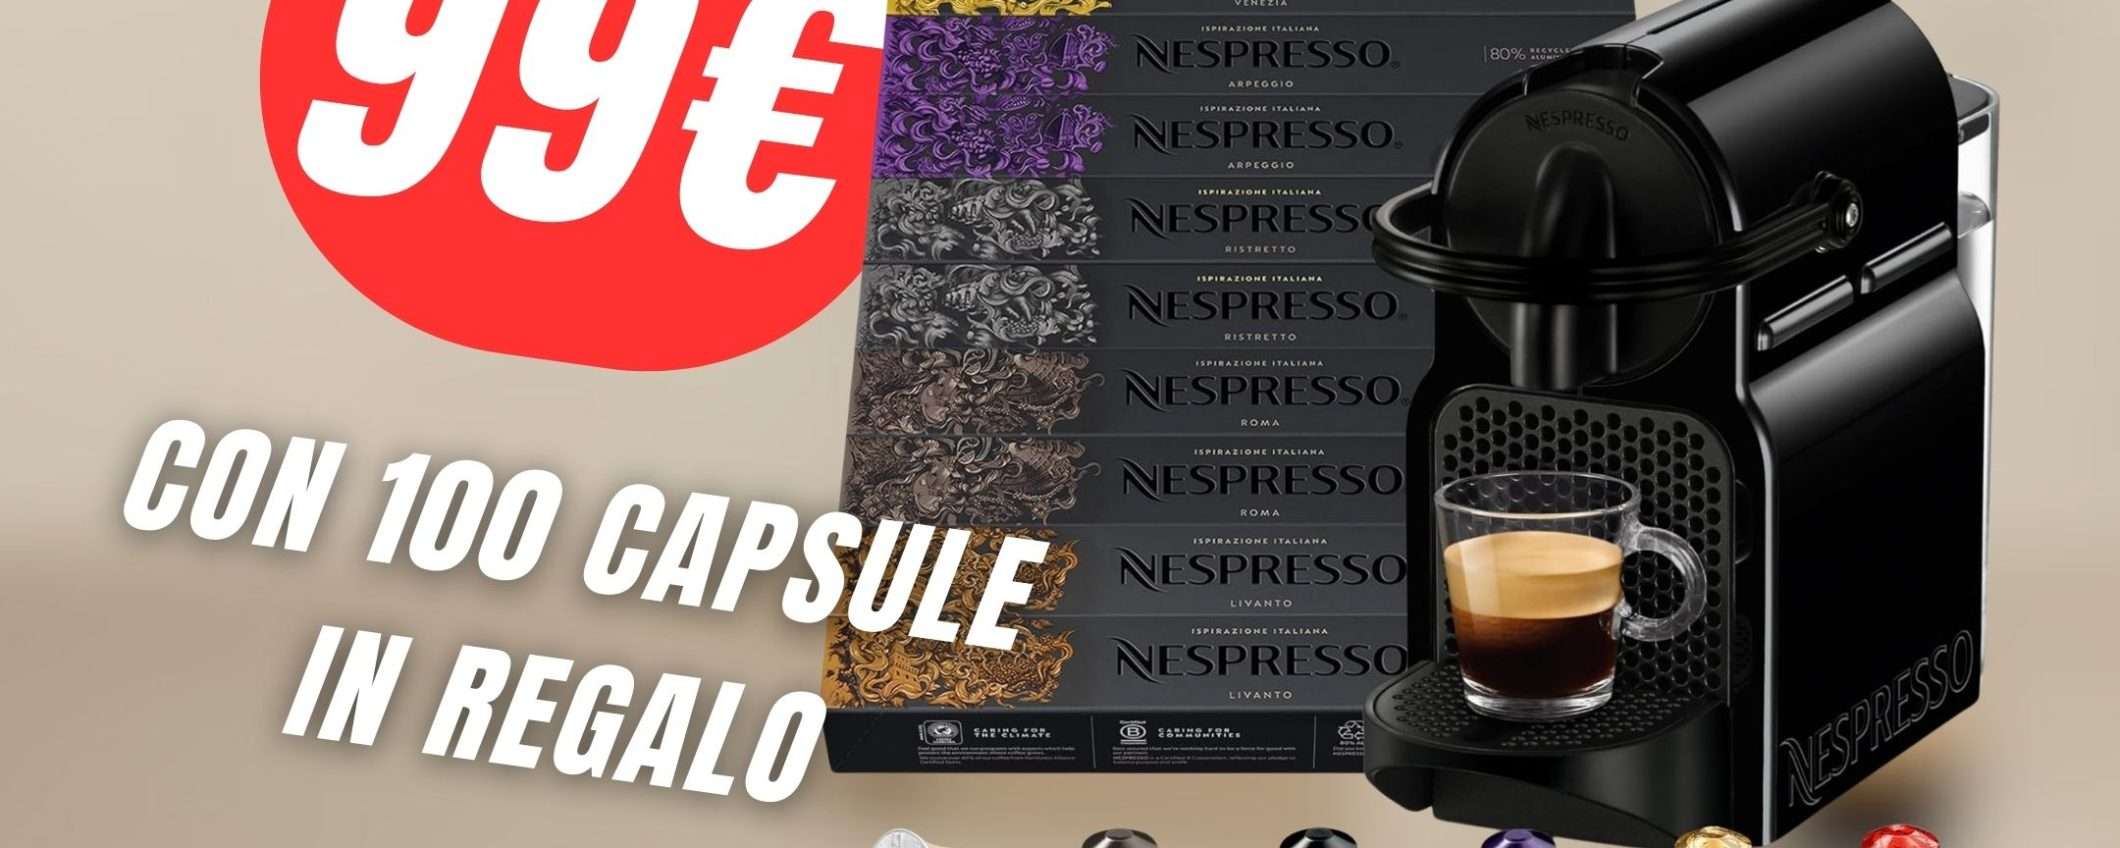 COMBO PAZZESCA: Macchina da Caffè Nespresso + 100 Capsule in REGALO!